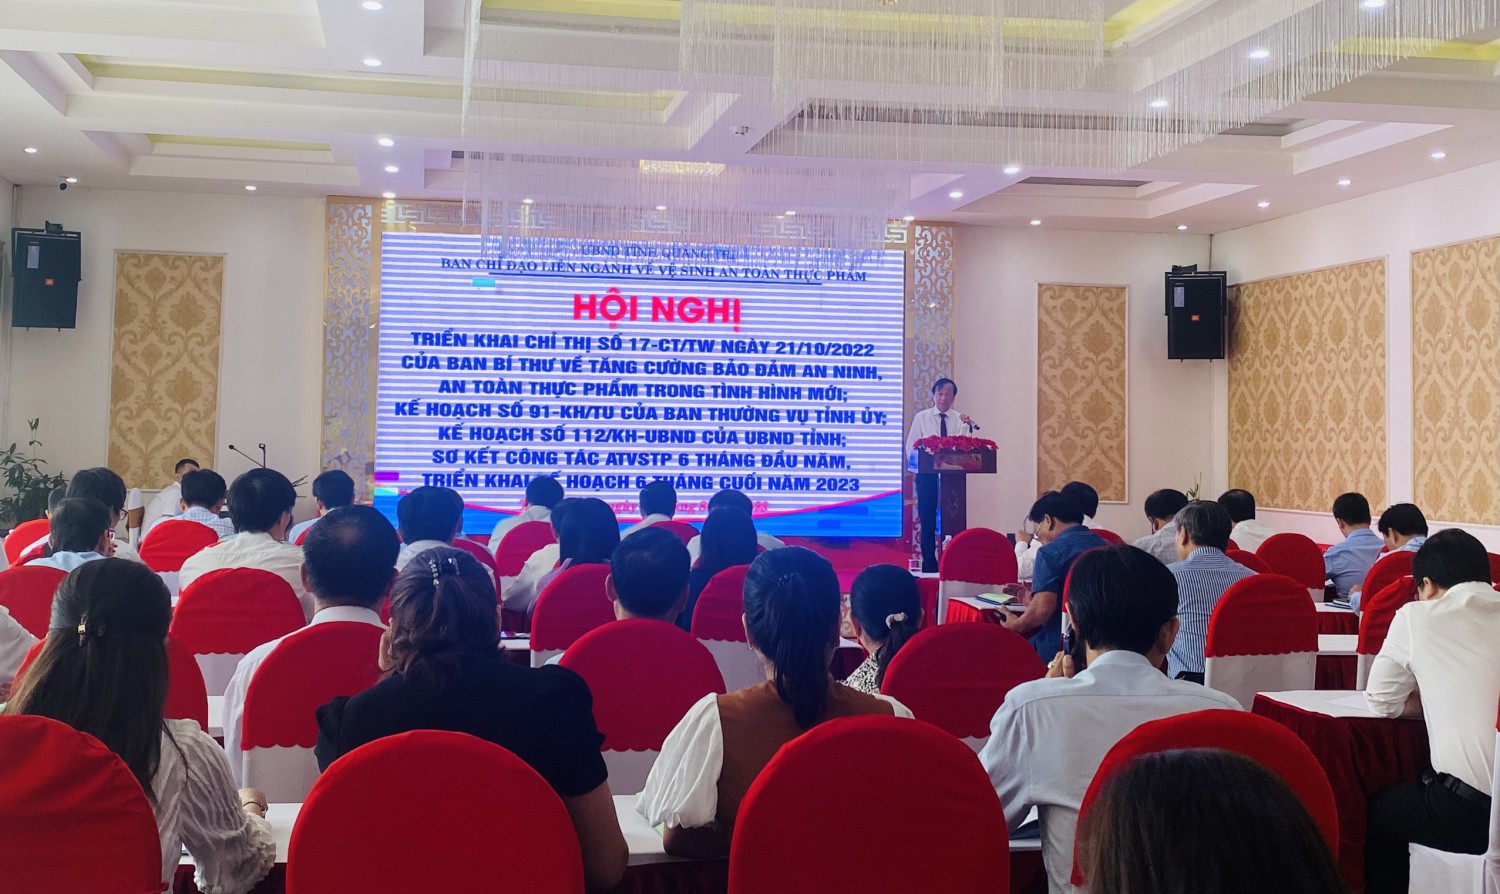 Đồng chí Đỗ Văn Hùng - Giám đốc Sở Y tế, Phó trưởng Ban chỉ đạo LNVSATTP tỉnh phát biểu chỉ đạo hội nghị